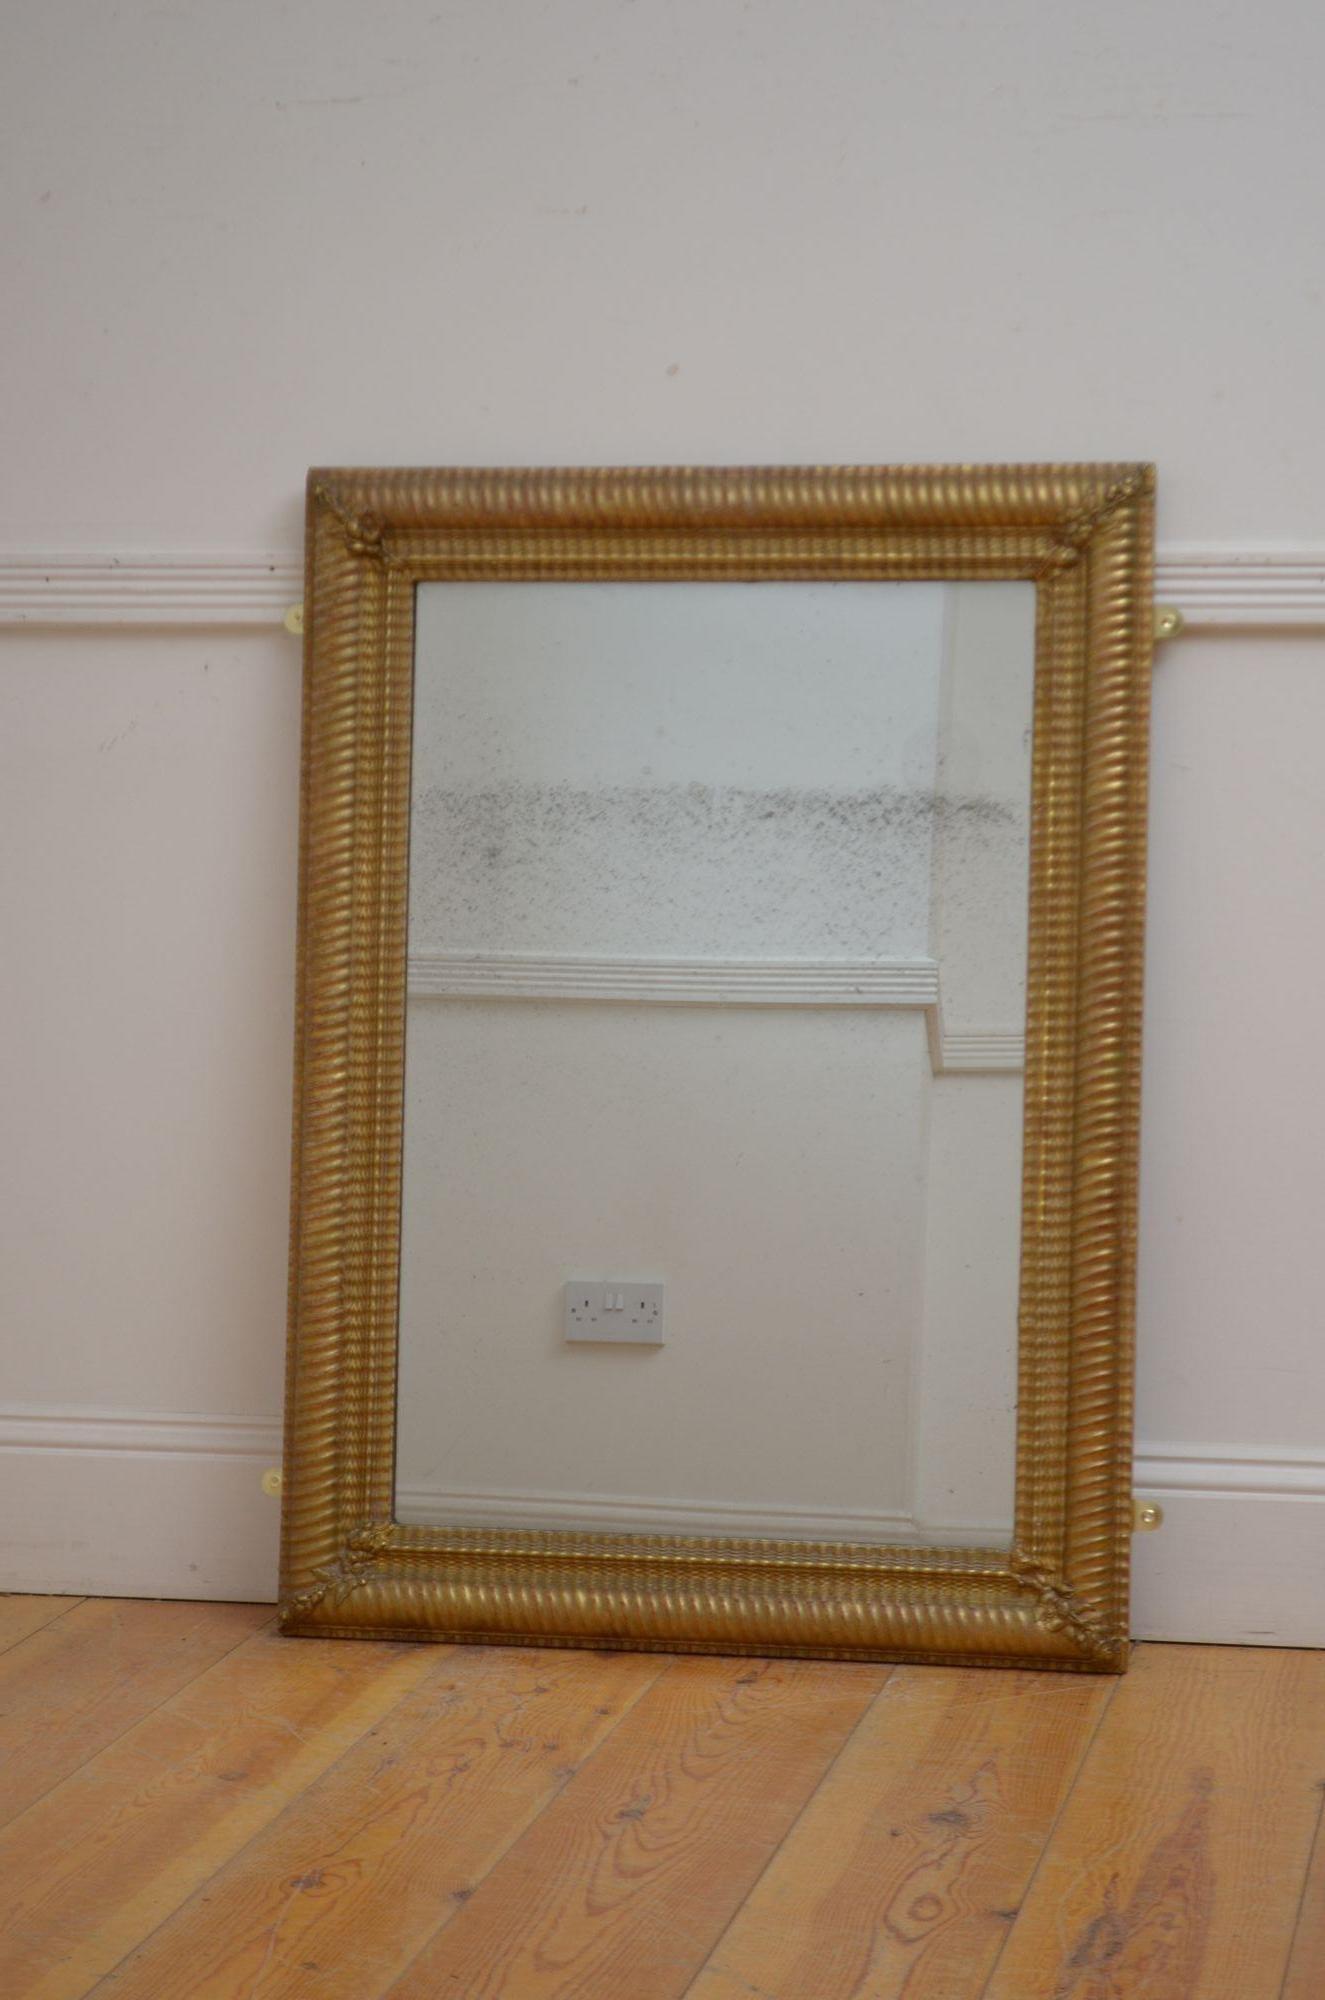 St051 Miroir ancien en bois doré du 19ème siècle, avec verre d'origine, dans un cadre moulé et doré avec un effet d'ondulation et des motifs floraux à chaque coin. Ce miroir ancien peut être positionné en portrait ou en paysage. Ce miroir a conservé